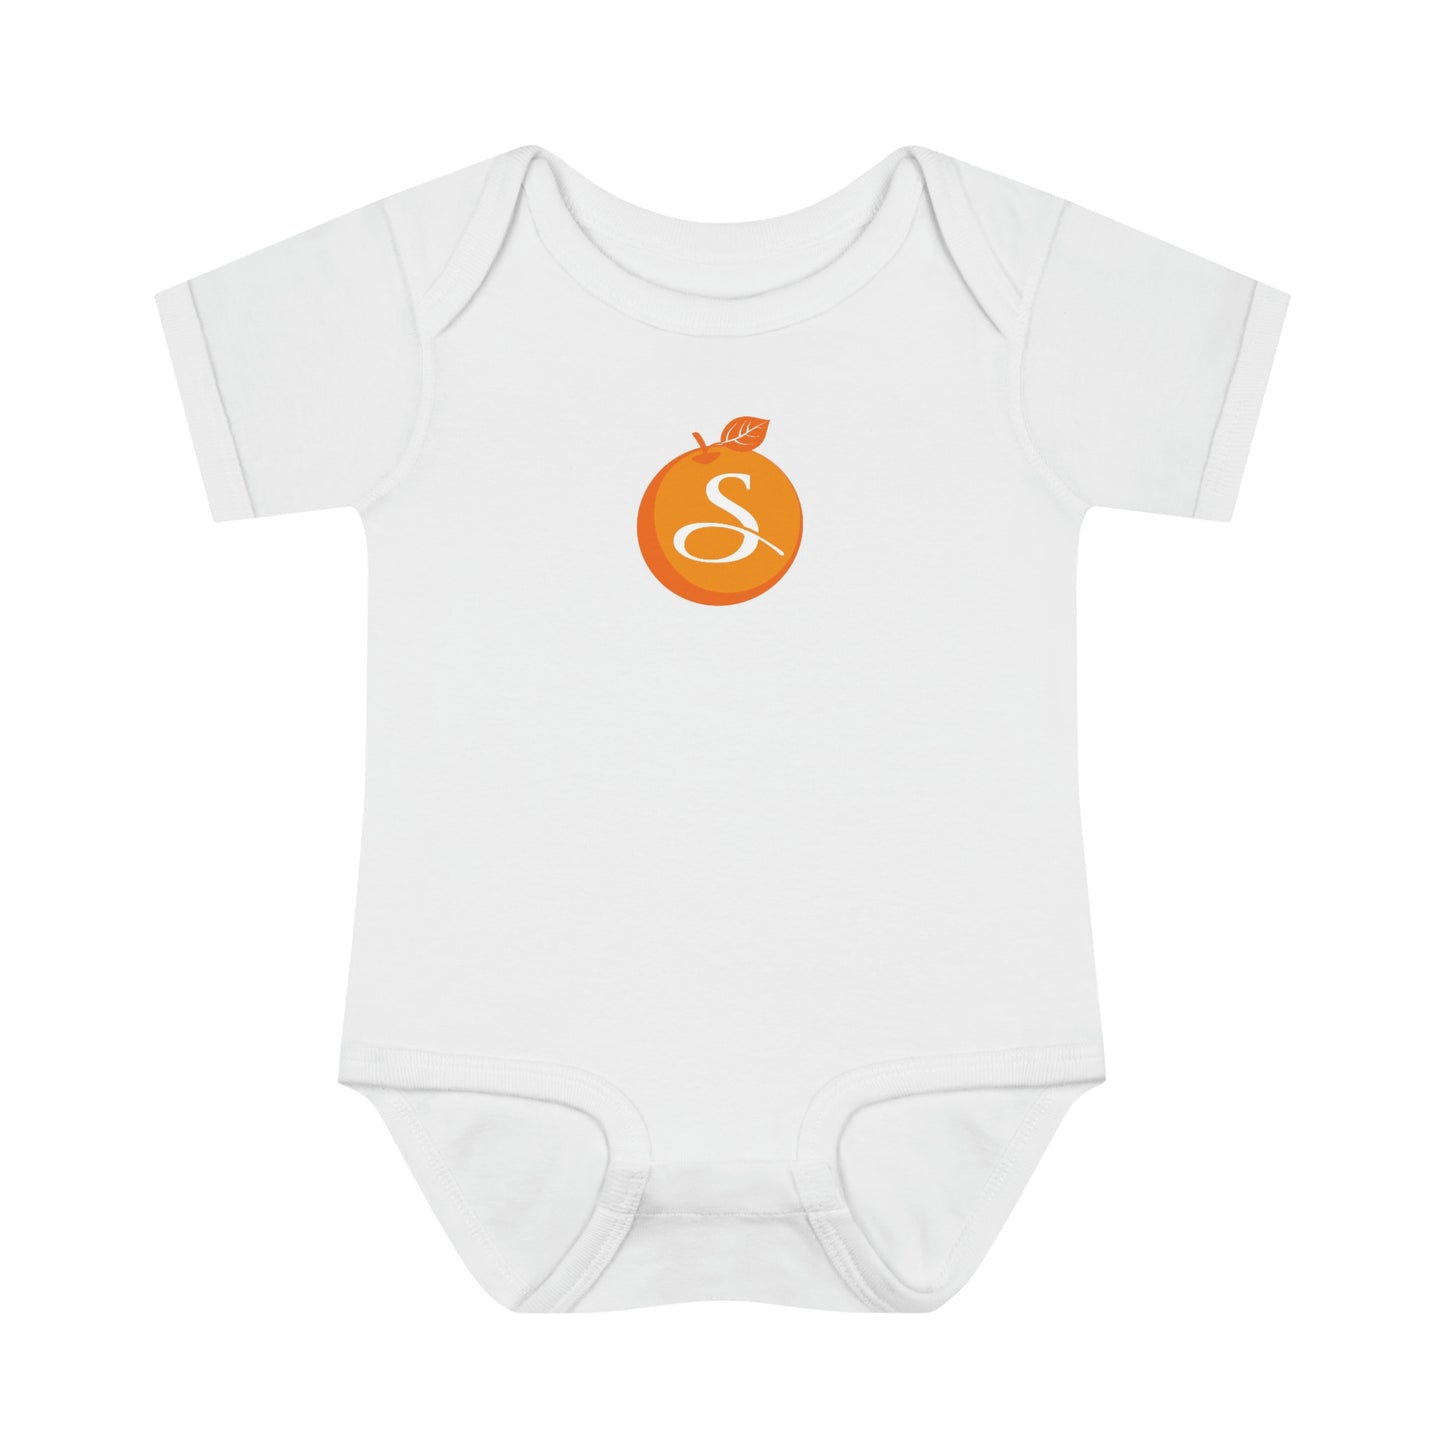 Smith & Associates Infant Baby Rib Bodysuit